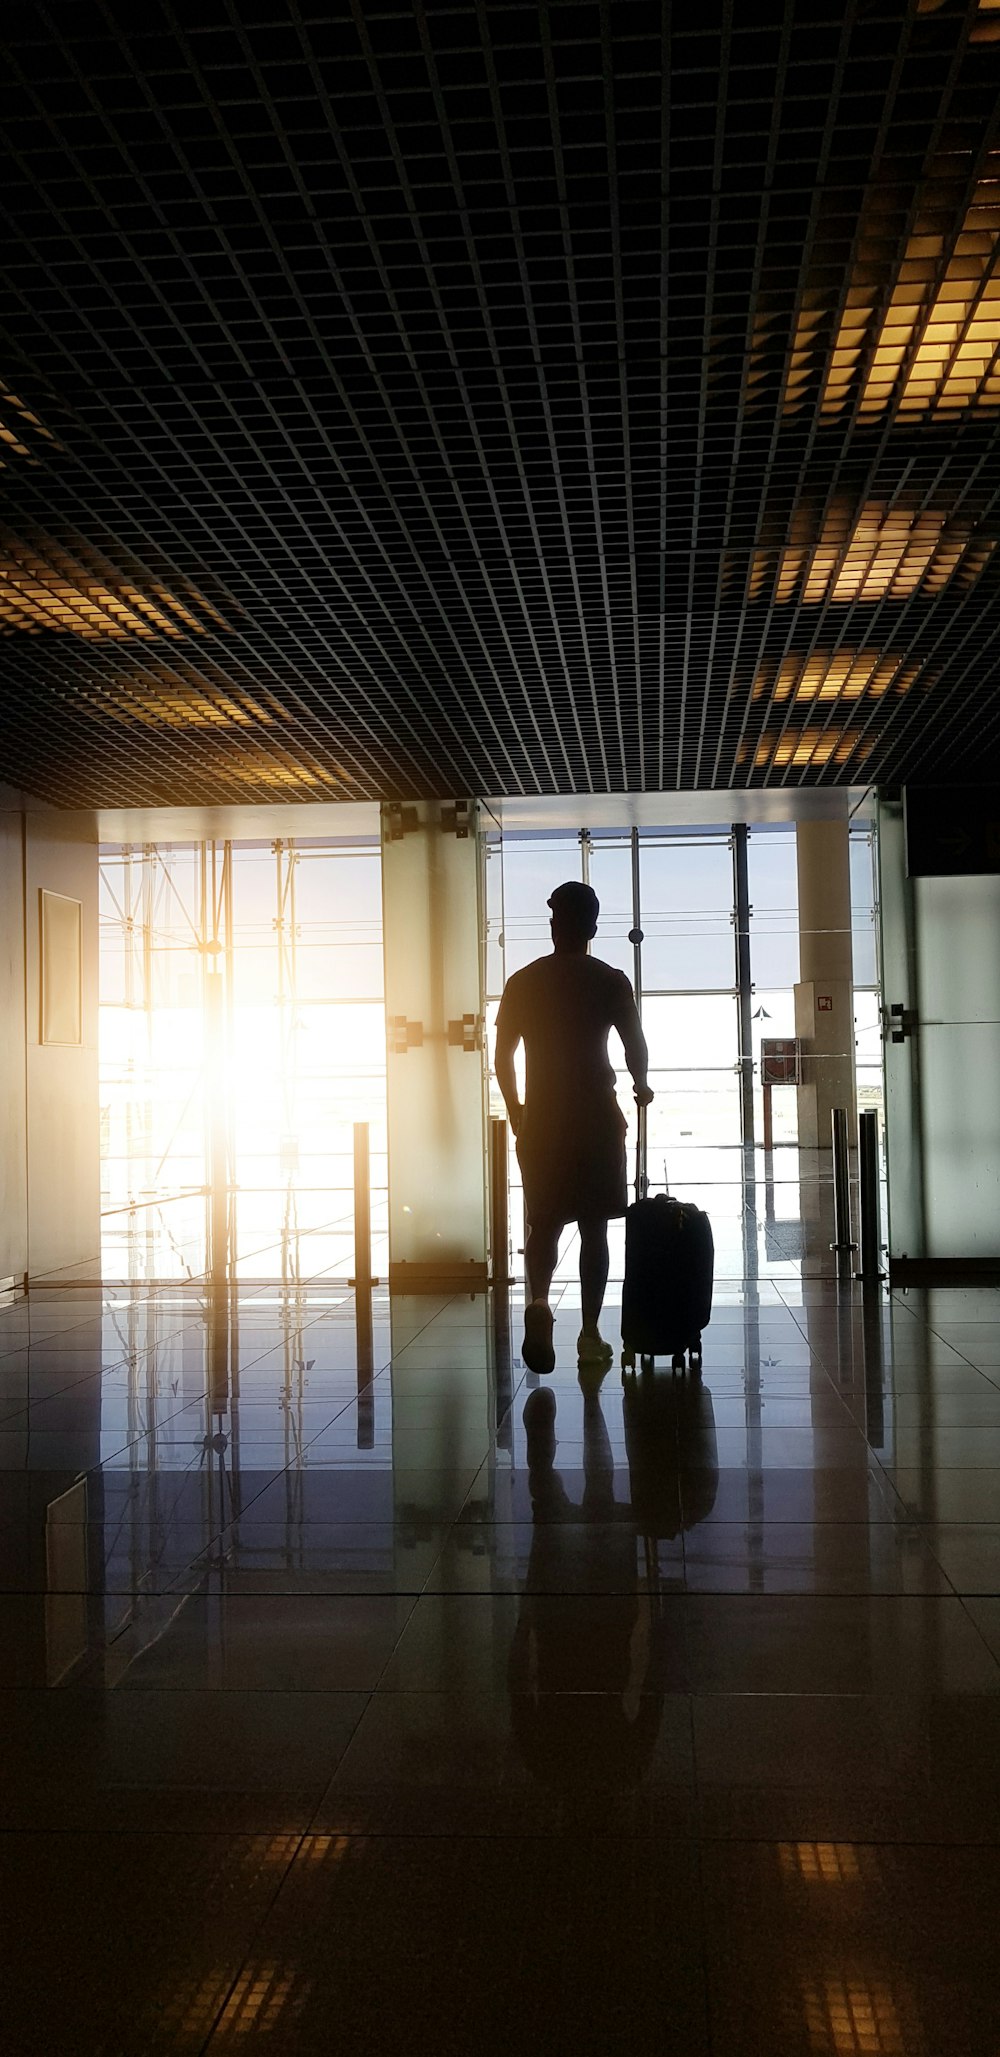 Silueta de hombre sosteniendo equipaje dentro del aeropuerto